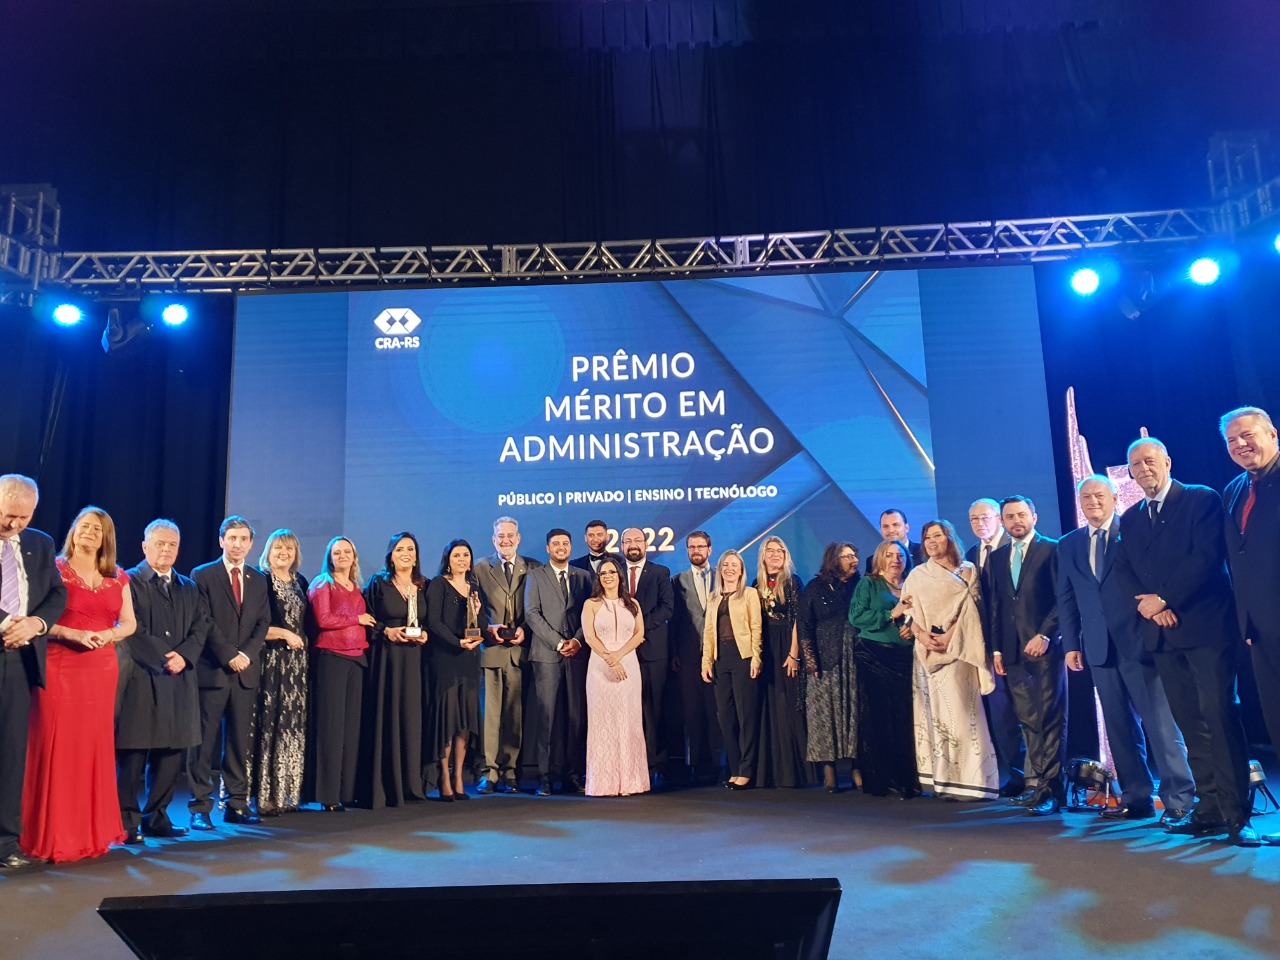 Noite de muita emoção na entrega do Prêmio Mérito em Administração 2022 